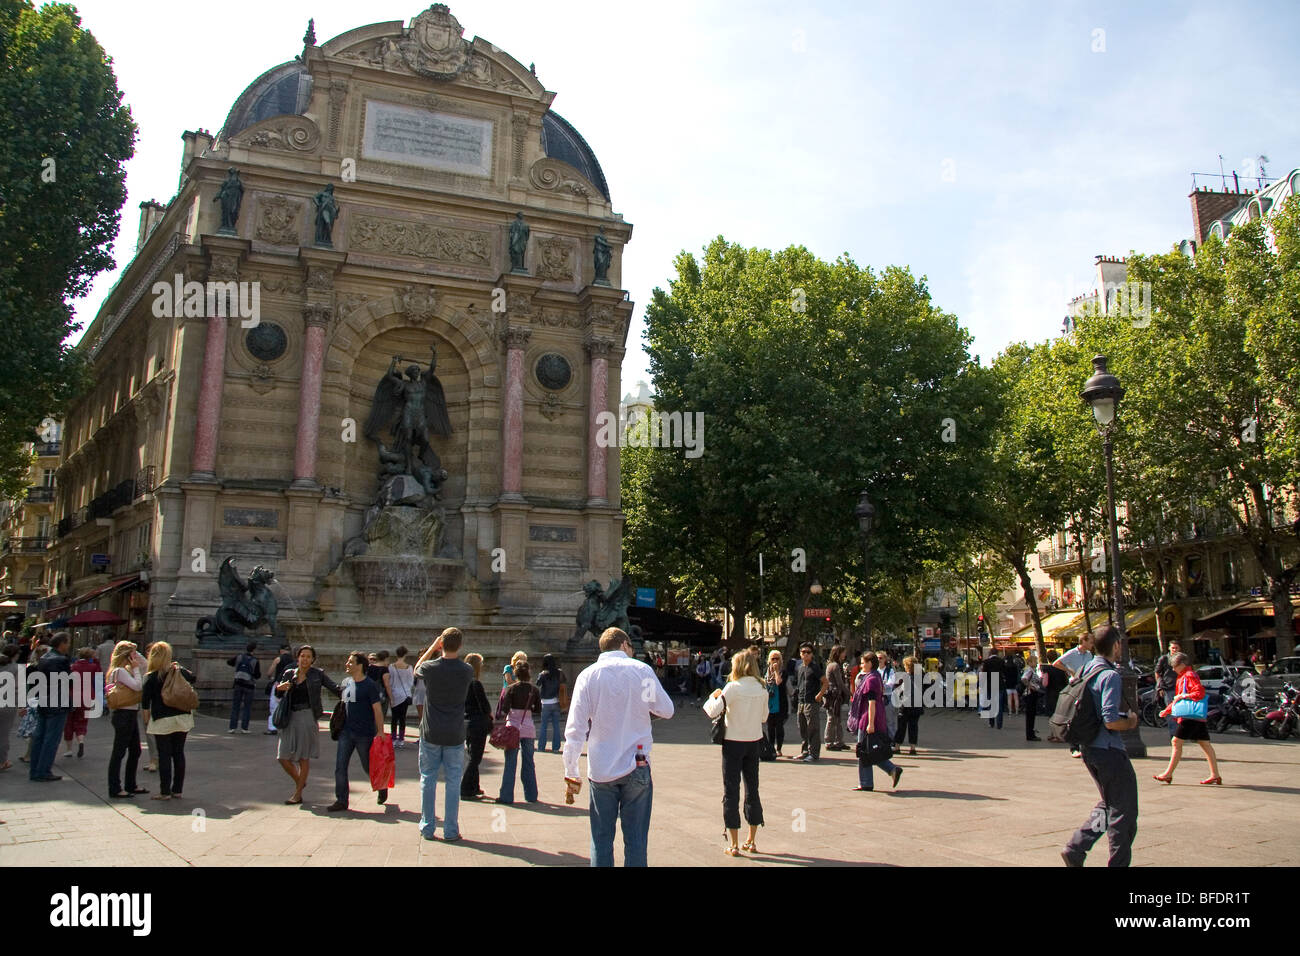 Die Fontaine Saint-Michel befindet sich in der Place Saint-Michel, Paris, Frankreich. Stockfoto